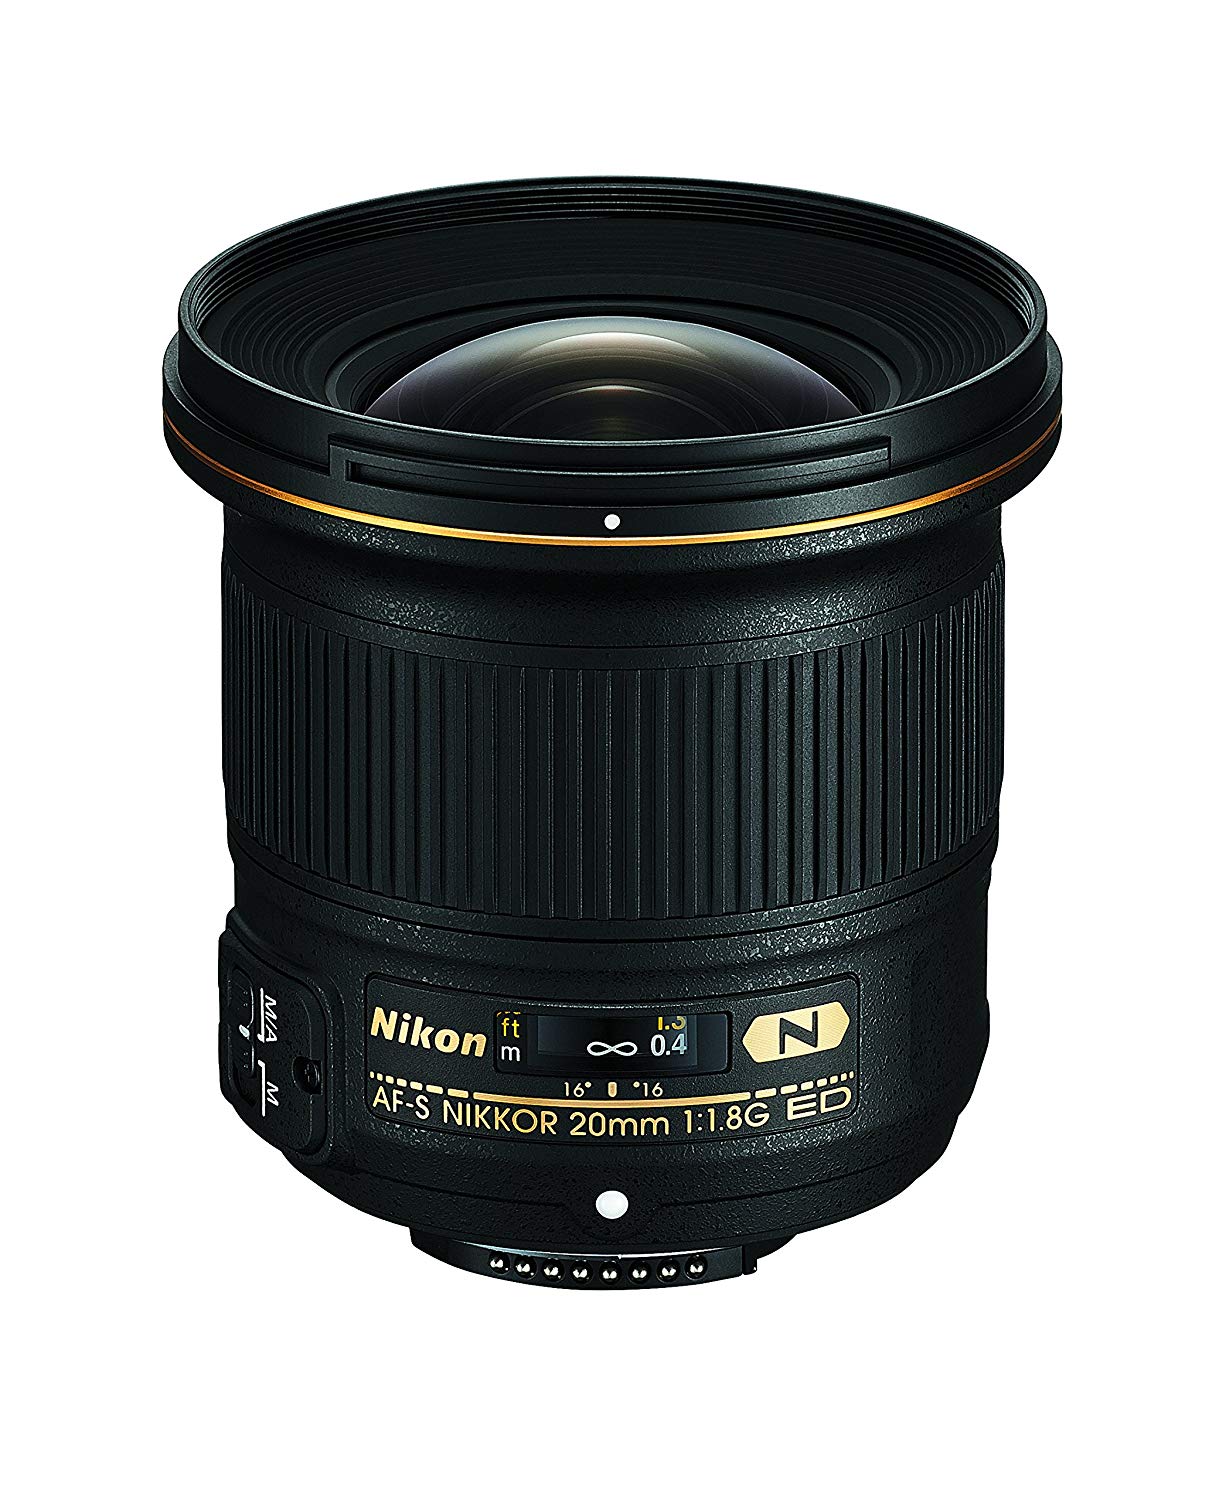 Nikon AF-S FX NIKKOR 20mm f/1.8G ED Fixed Lens with Auto Focus for DSLR Cameras